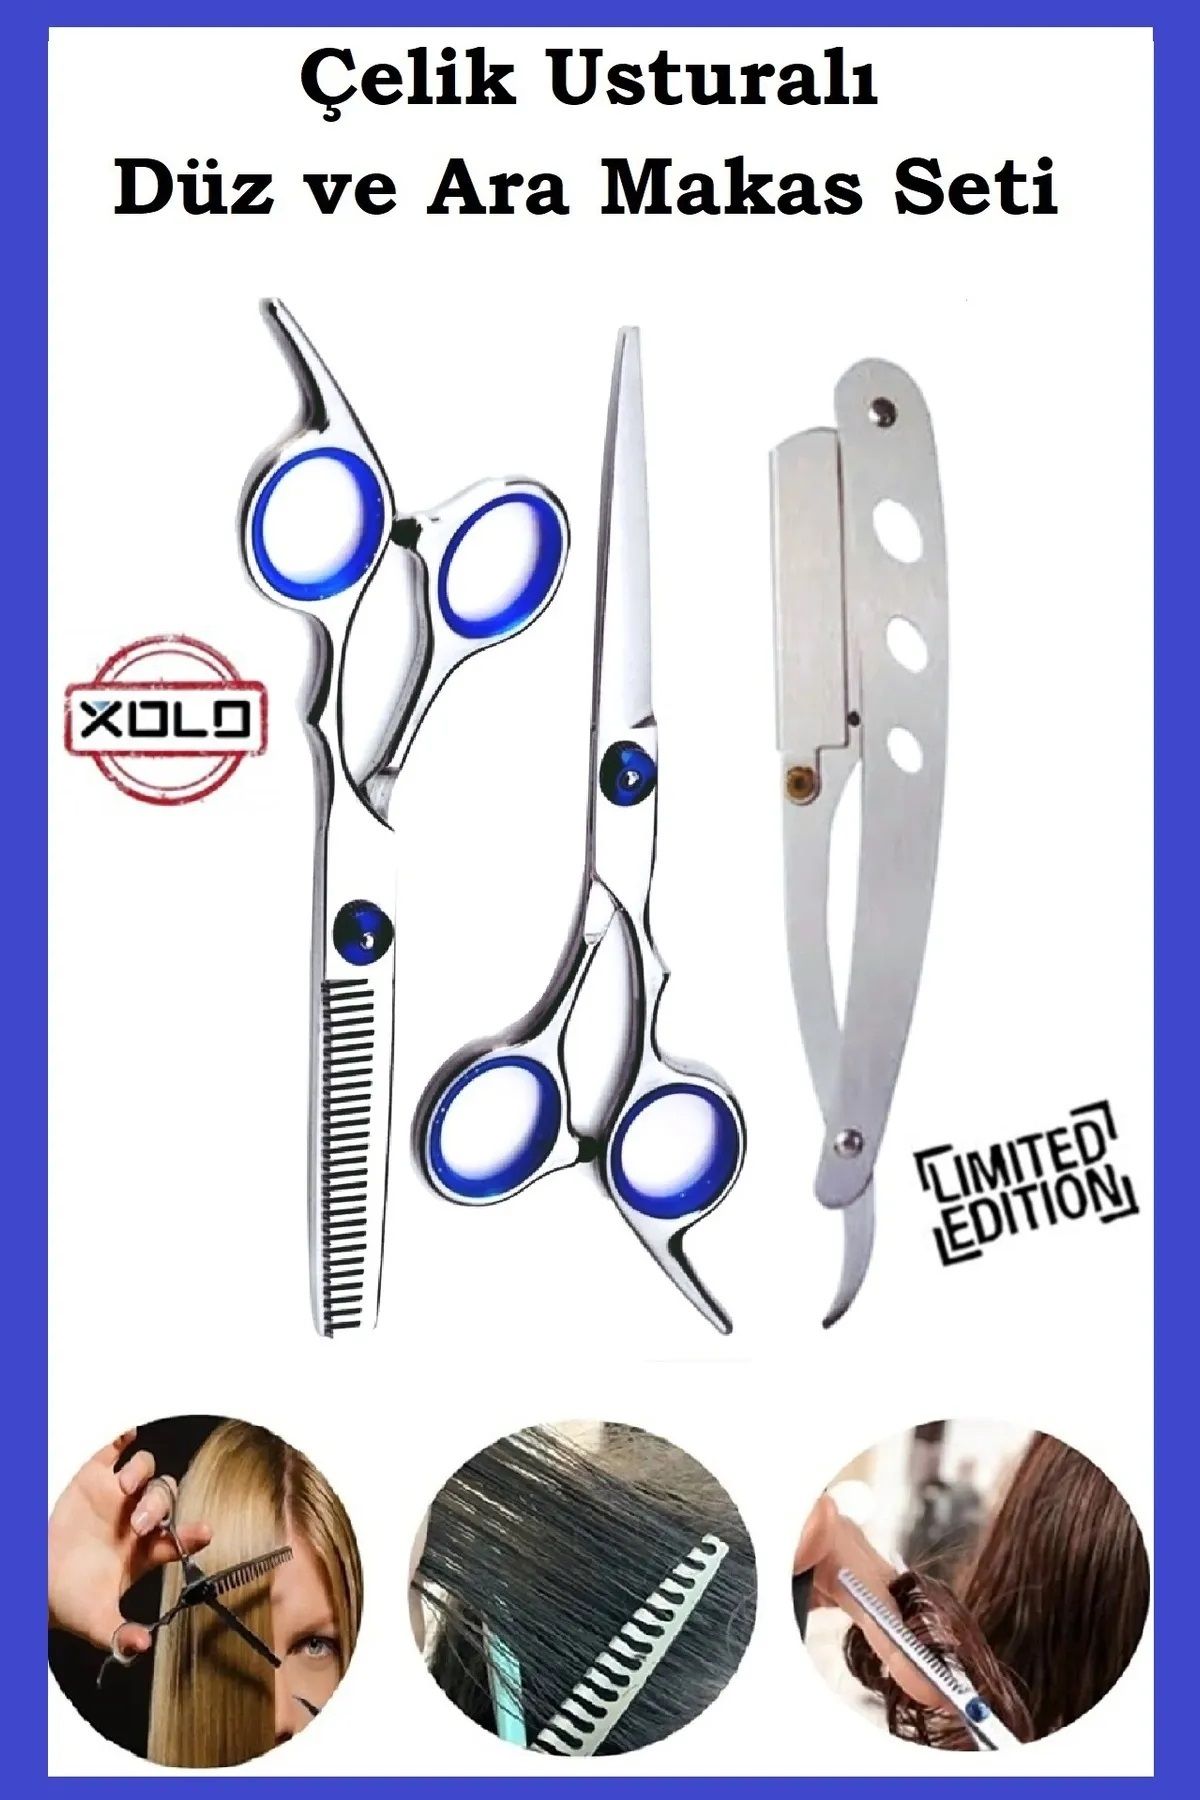 Xolo Çelik Gümüş Usturalı 6.5 inç Profesyonel Berber Kuaför Saç Kesim Ara ve Düz Makas Ustura Seti Xlq515